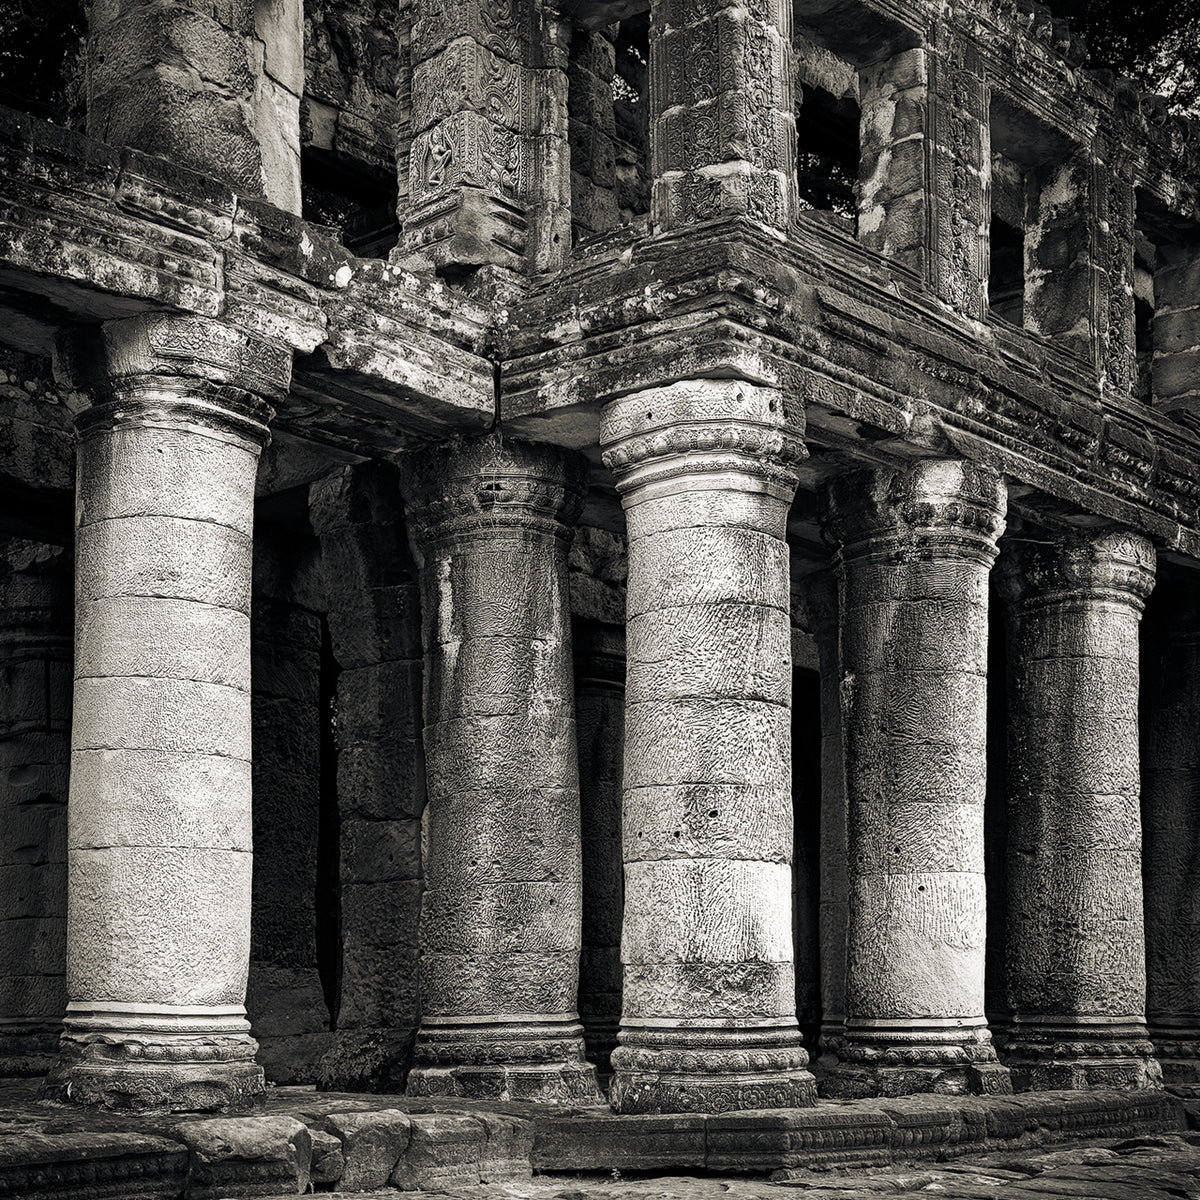 Columns II, Preah Khan Temple, Angkor, Cambodia. 2022